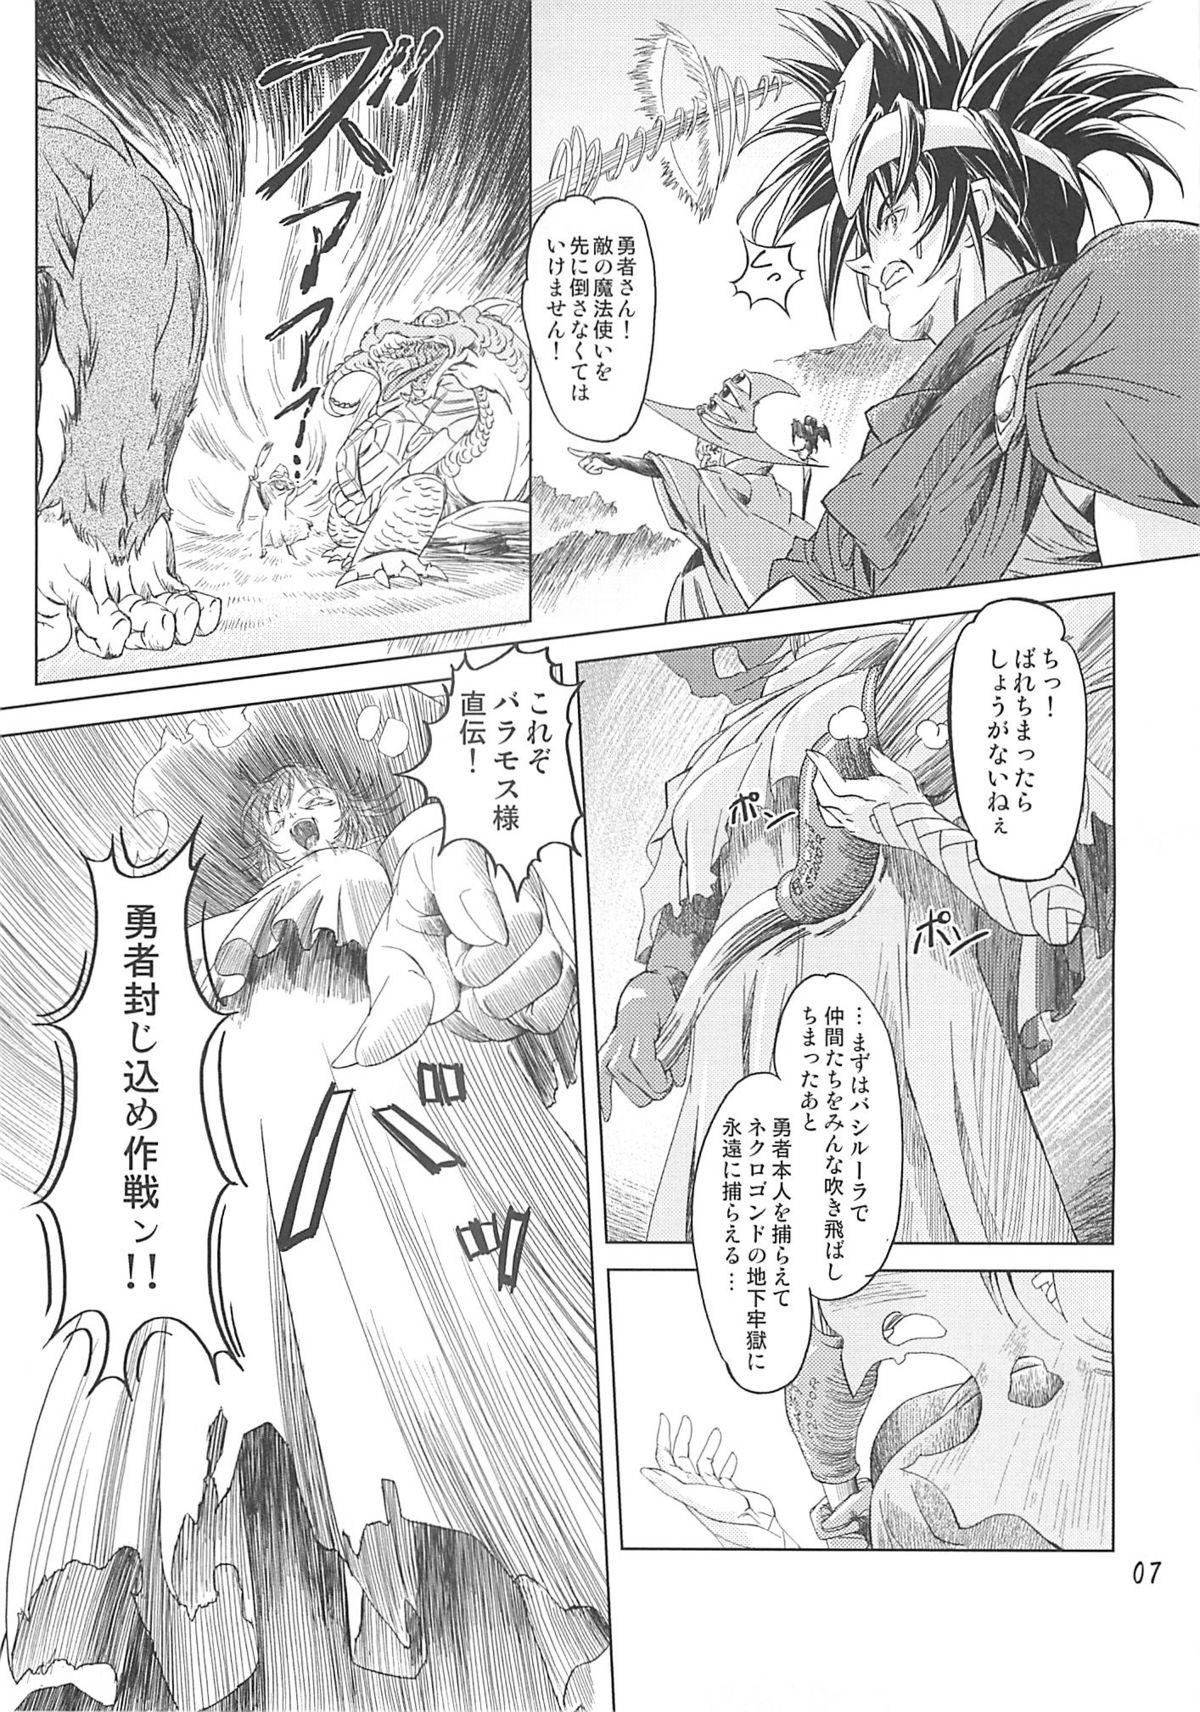 Amatuer Porn Mahoutsukai vs. - Dragon quest iii Sapphicerotica - Page 6